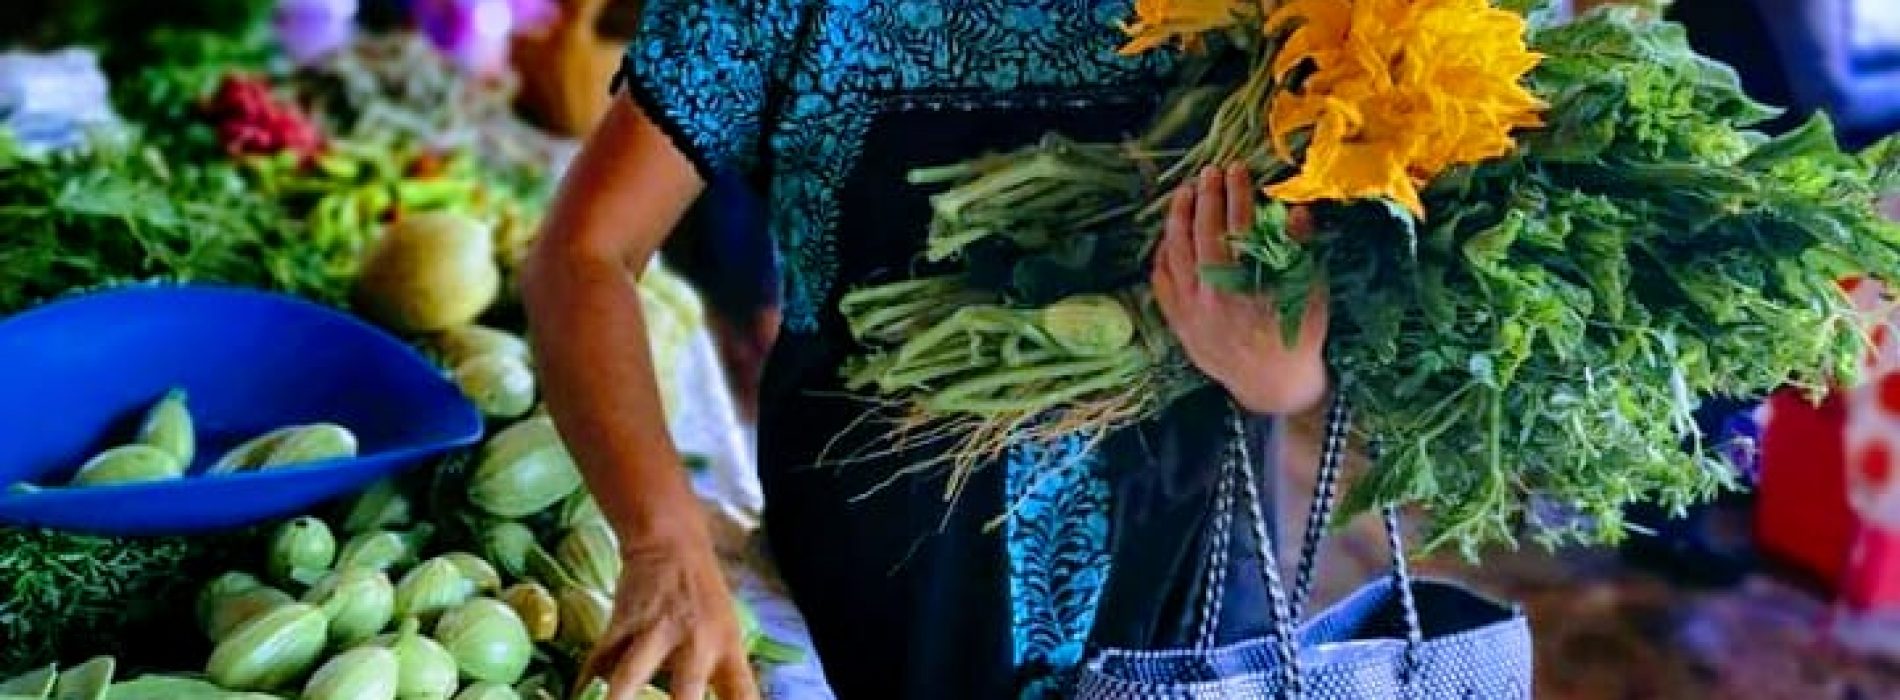 Los mercados de Oaxaca resguardan su identidad y tradiciones